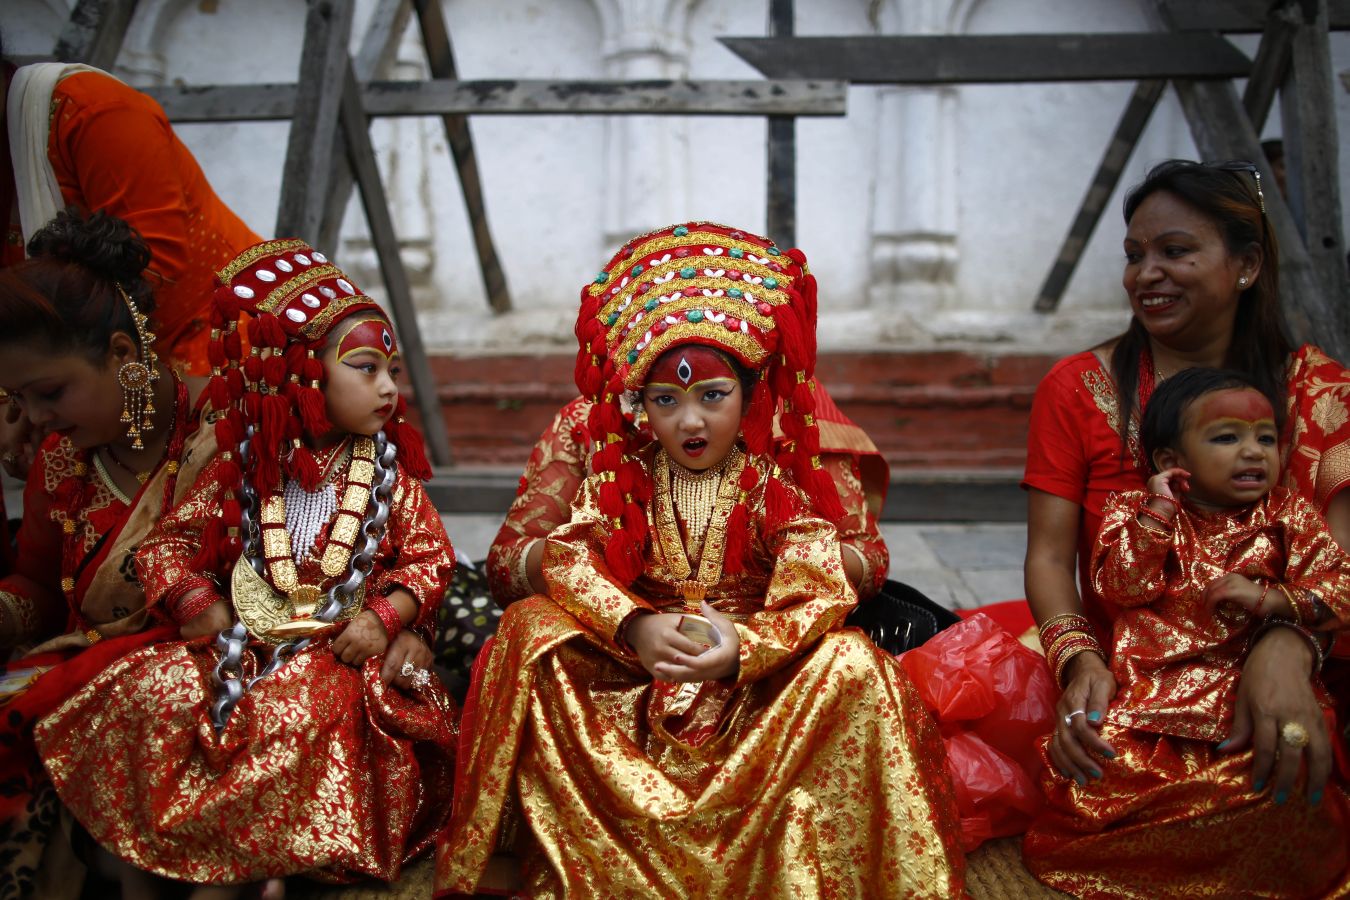 Niñas vestidas como la Diosa Viviente Kumari para celebrar el festival Kumari Puja en Katmandú (Nepal). Las niñas se hacen pasar por la Diosa y son adoradas por personas creyendo que sus hijos se mantendrán sanos